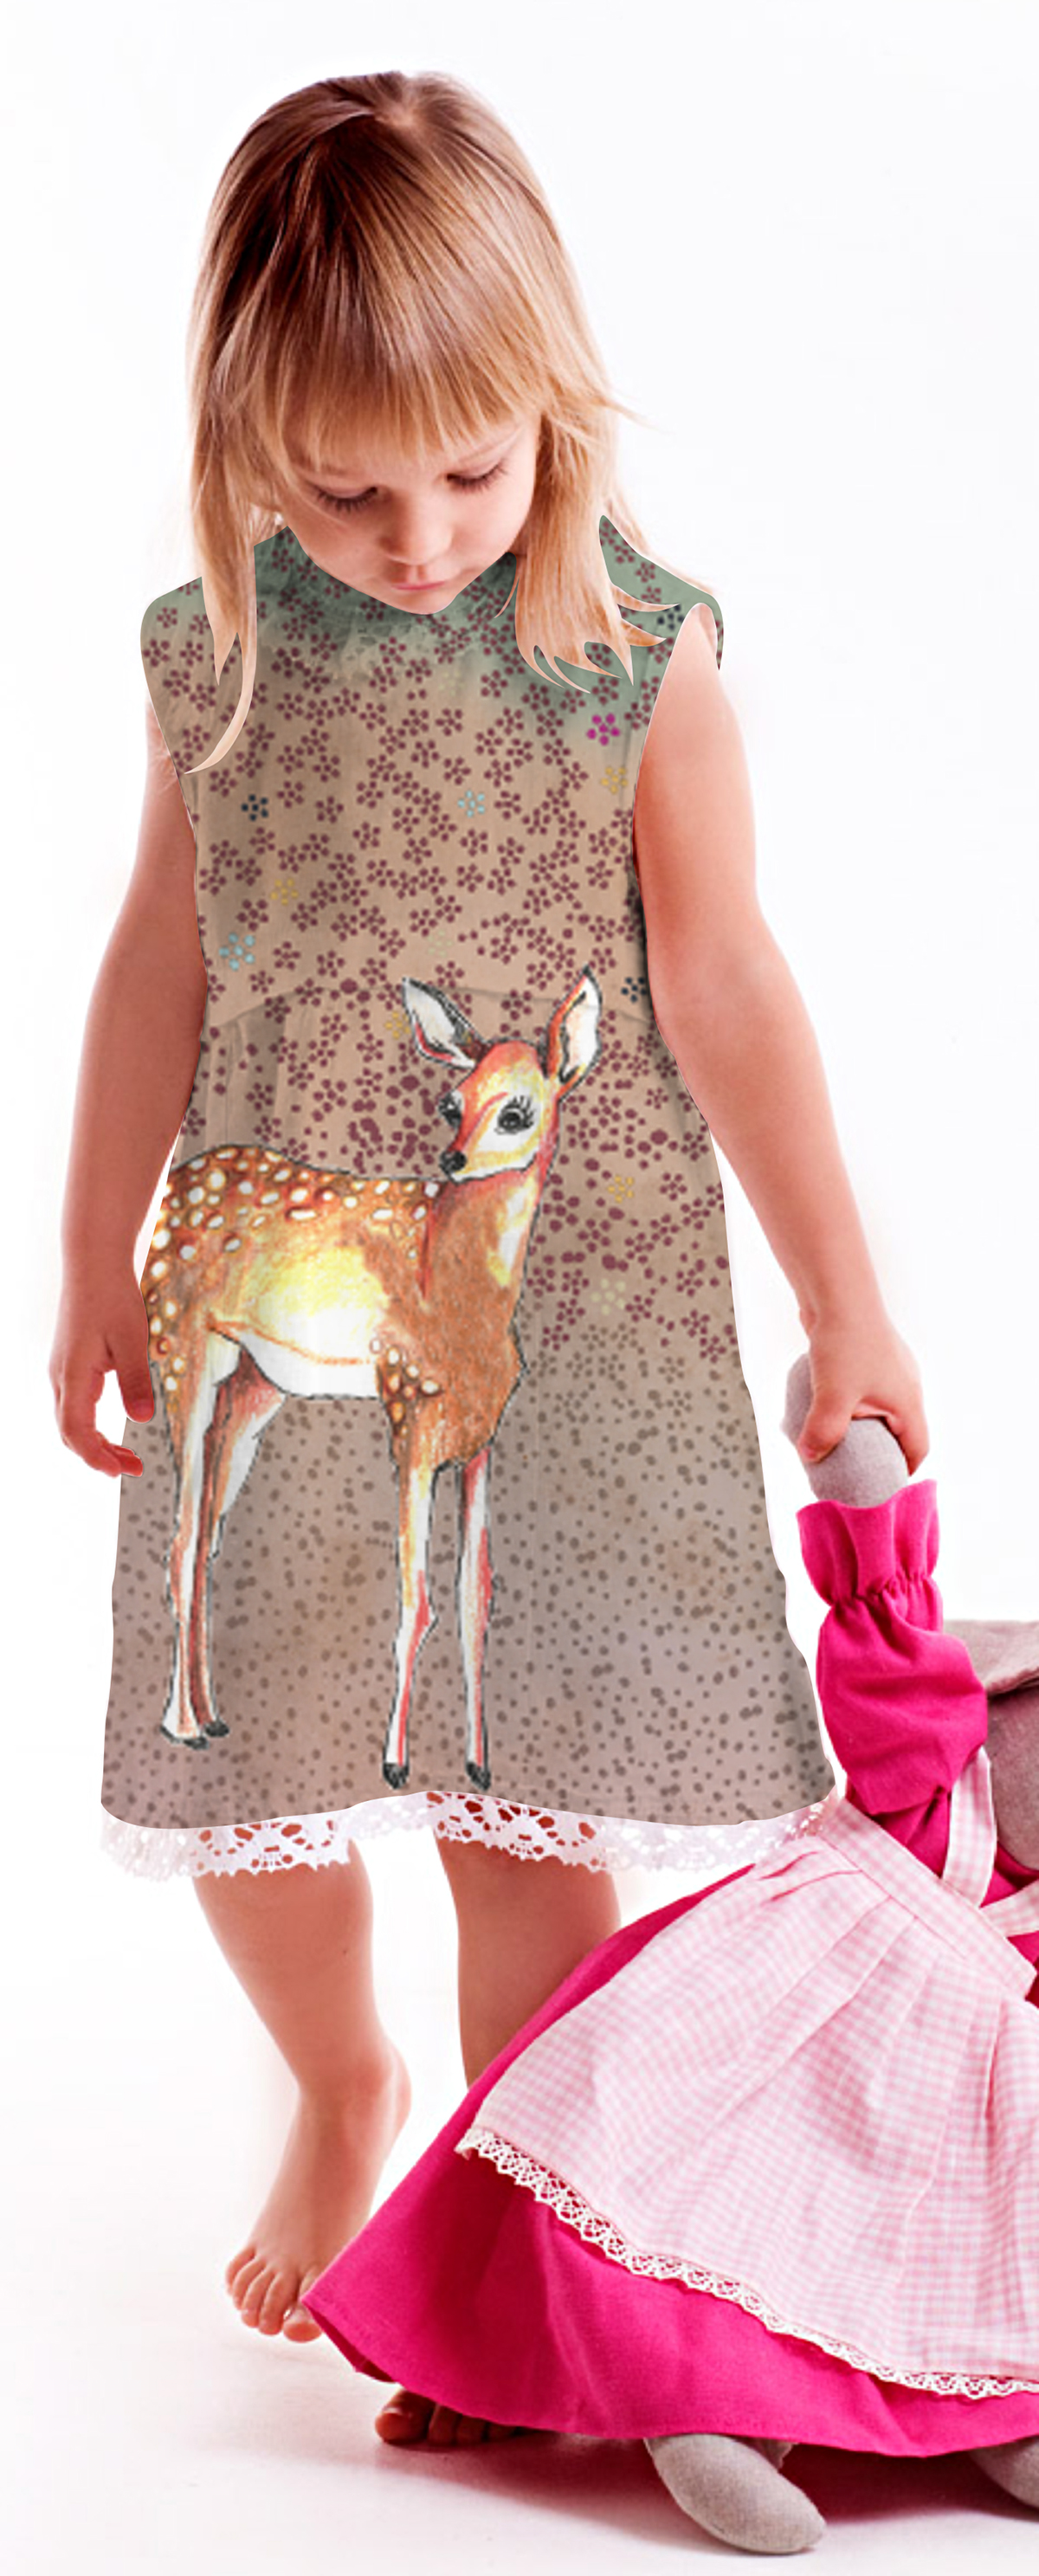 Bambi kids dress dear colored pencil afabula fabula print textile print pattern children fashion kids veado